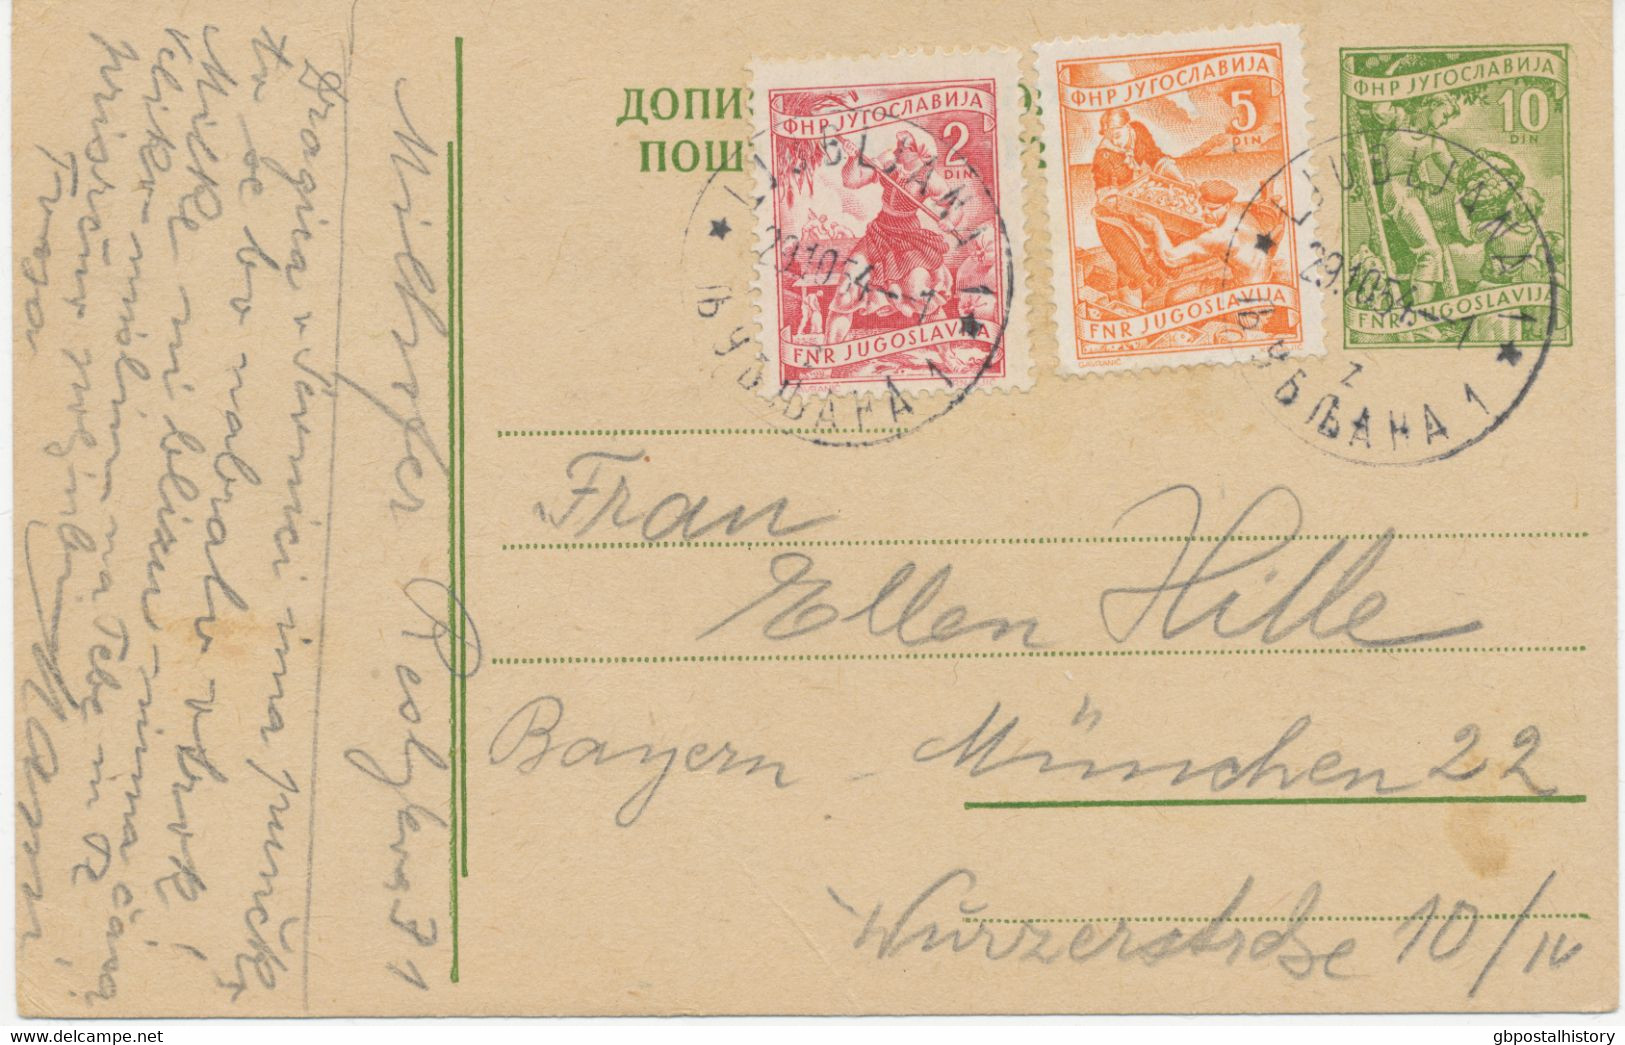 JUGOSLAWIEN 1954 10 Din Kab.-GA-Postkarte (Obstbau) M Zusatzfrankatur 2 Din (Bäuerin Mit Getreide) Und 5 Din (Fischfang) - Covers & Documents